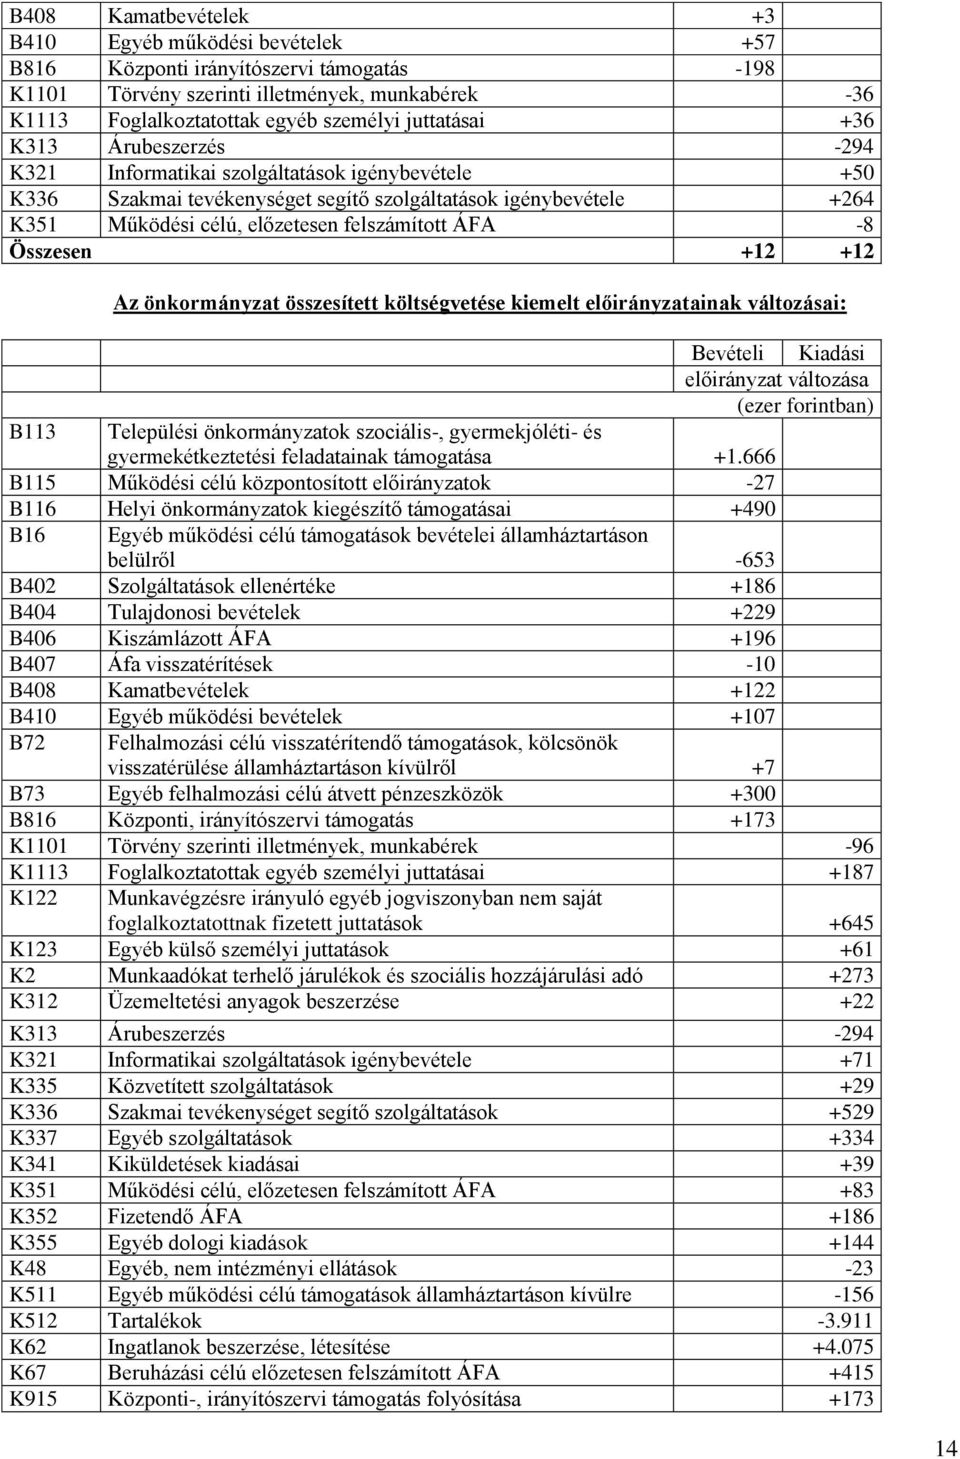 felszámított ÁFA -8 Összesen +12 +12 Az önkormányzat összesített költségvetése kiemelt előirányzatainak változásai: B113 Települési önkormányzatok szociális-, gyermekjóléti- és gyermekétkeztetési